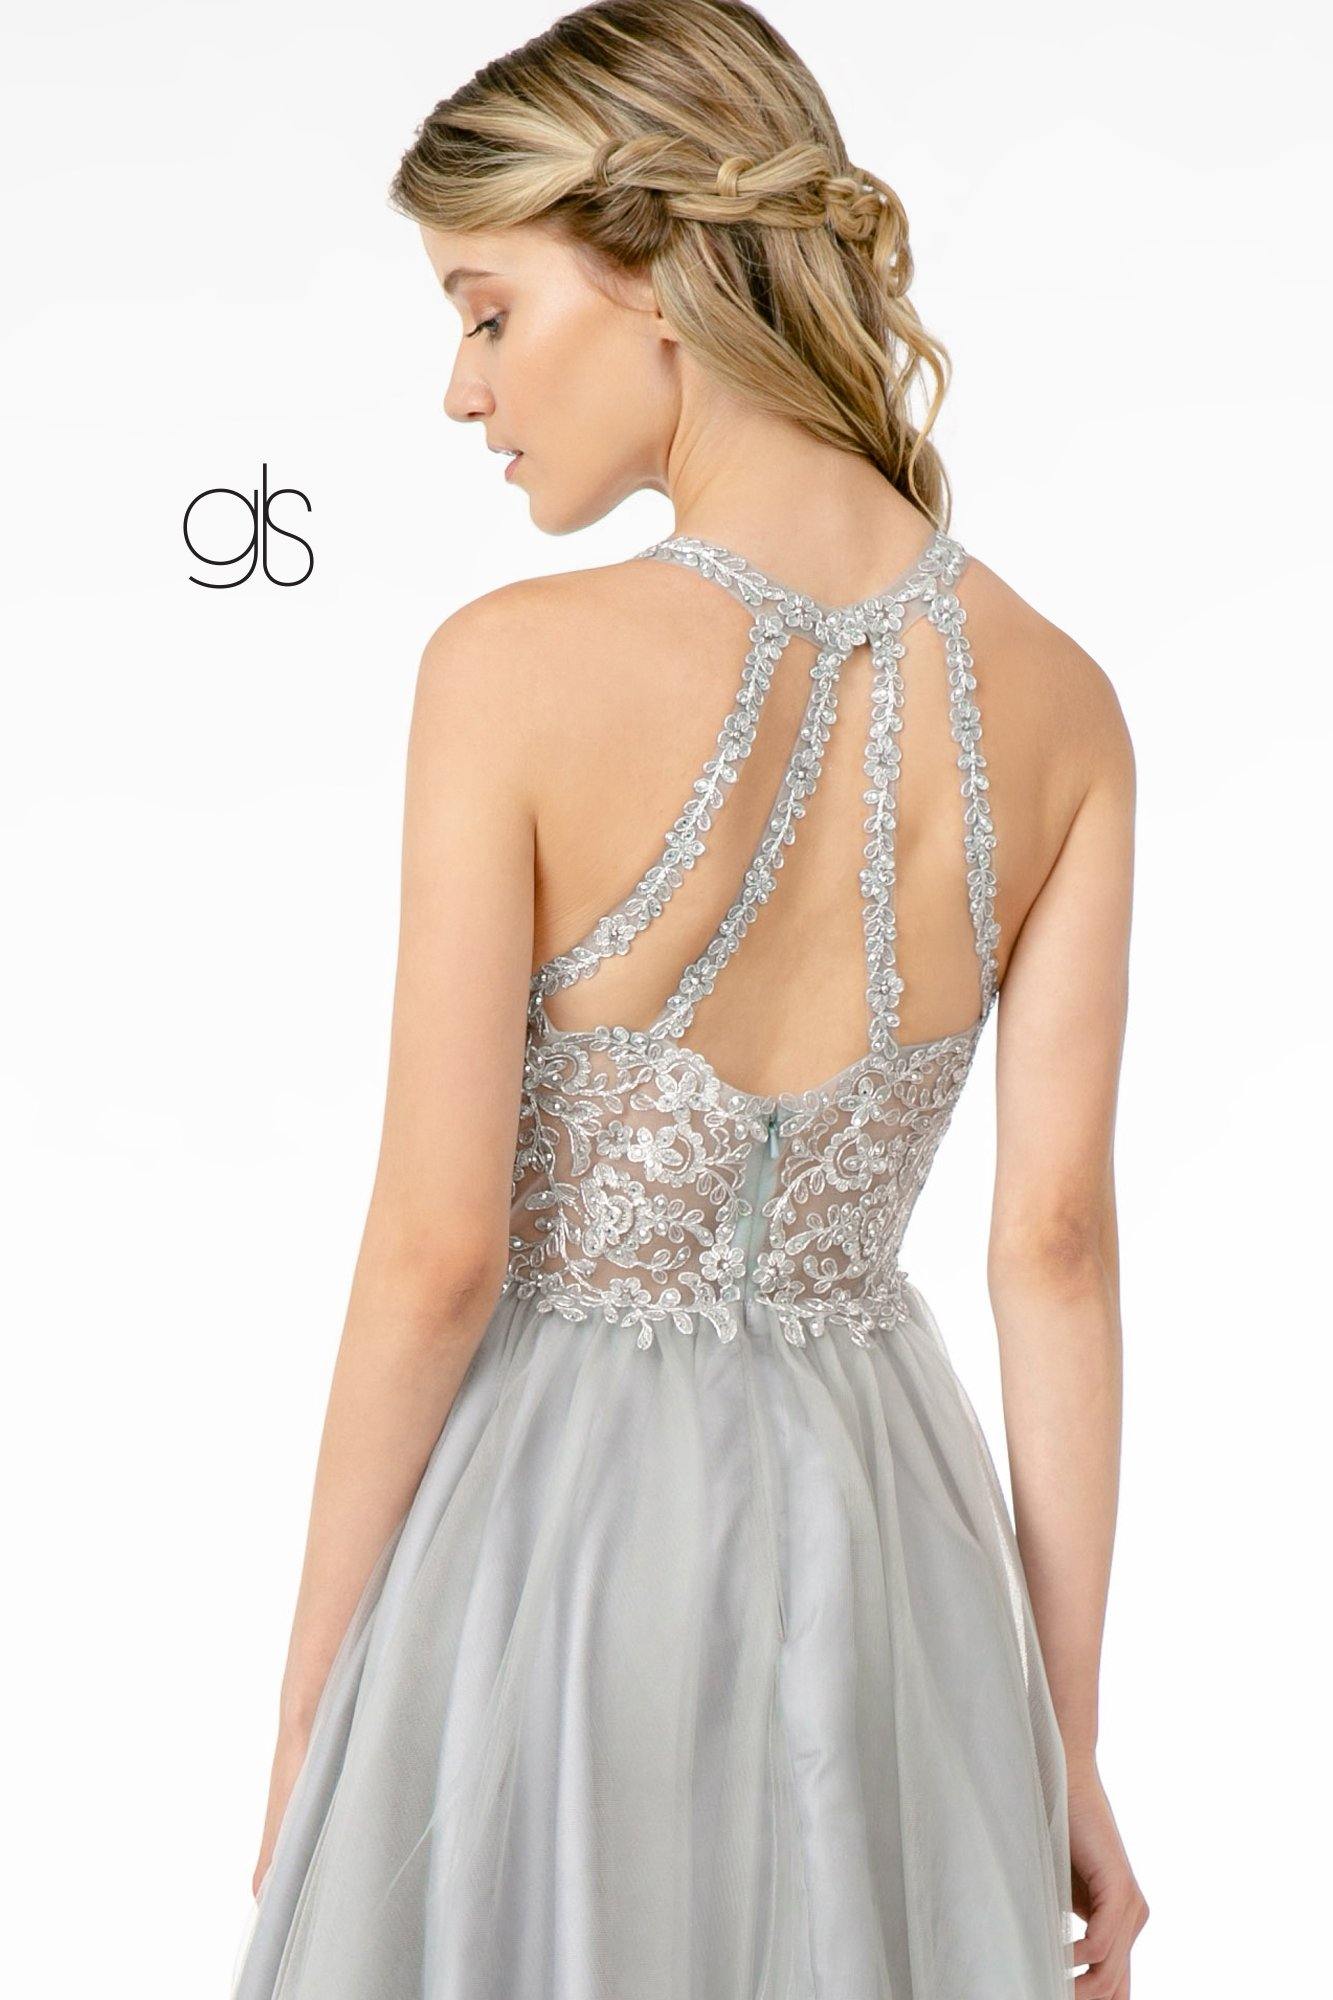 Jewel Embellished Embroidery Tulle Short Dress w/ Strap Back - The Dress Outlet Elizabeth K